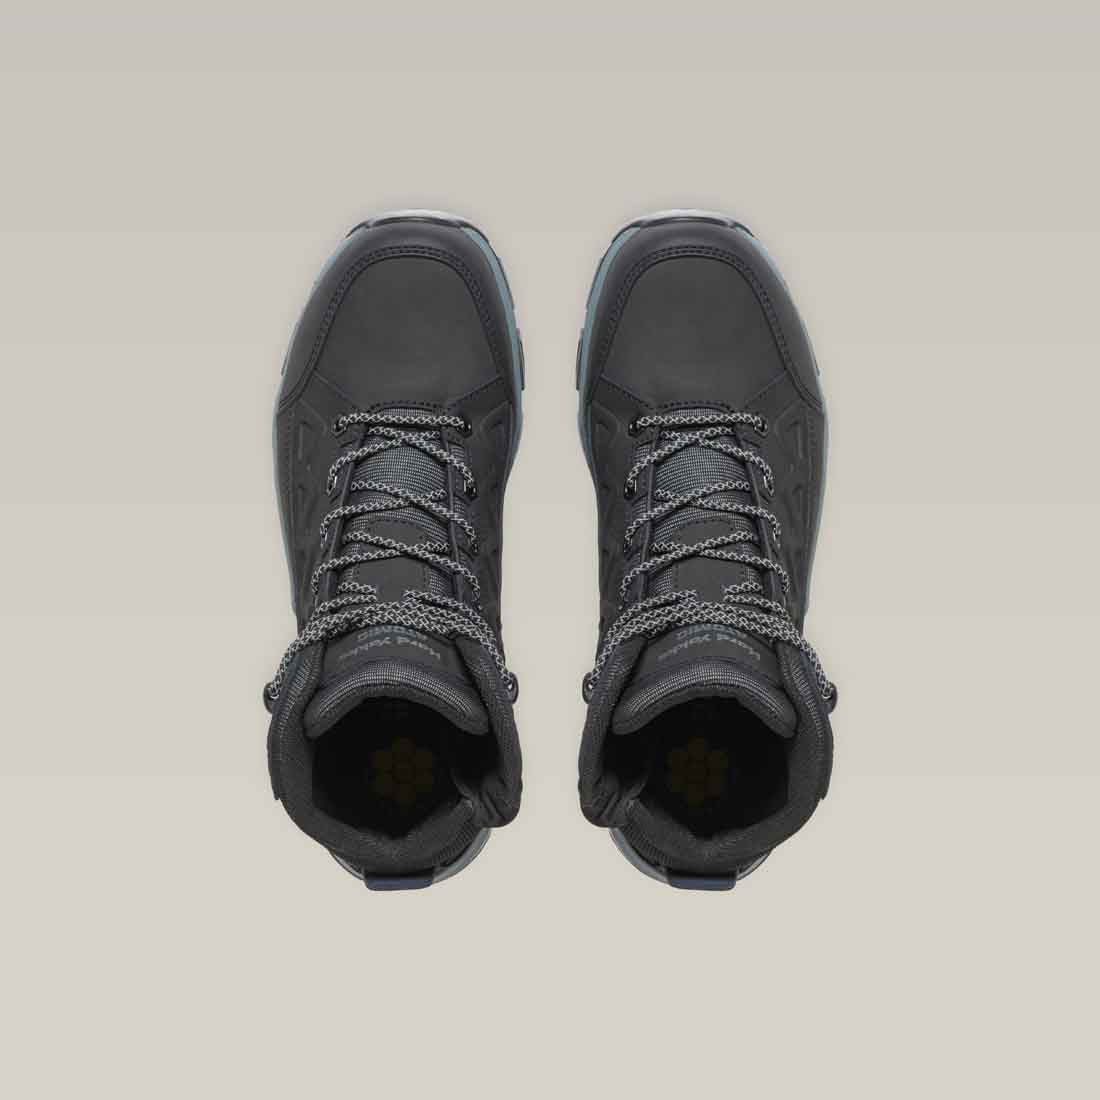 Hard Yakka Atomic Men's Safety Boots in Black | Men's Black Safety Boots